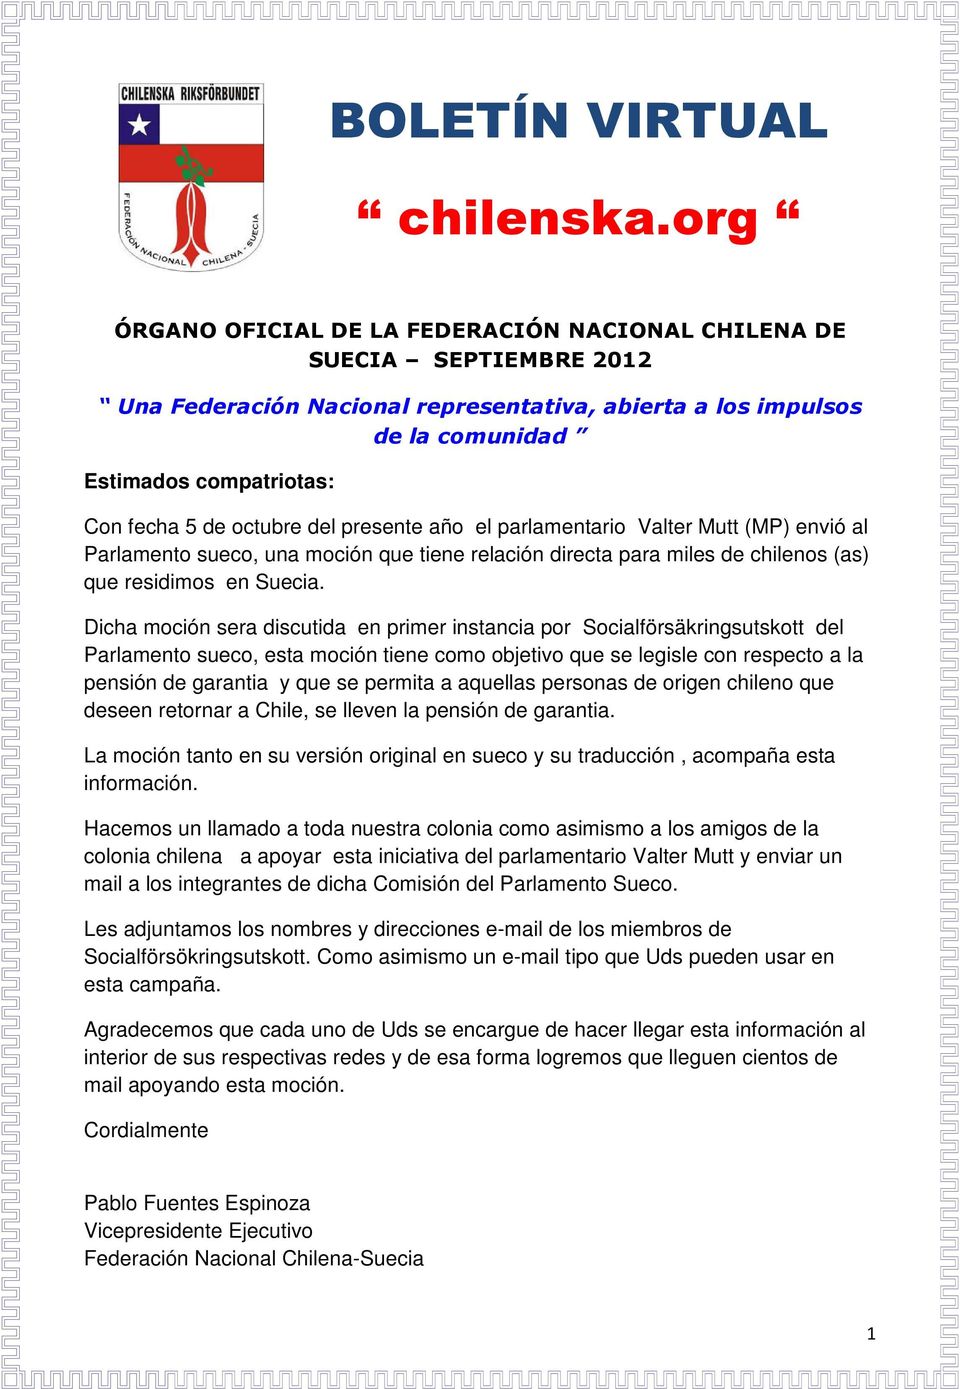 octubre del presente año el parlamentario Valter Mutt (MP) envió al Parlamento sueco, una moción que tiene relación directa para miles de chilenos (as) que residimos en Suecia.